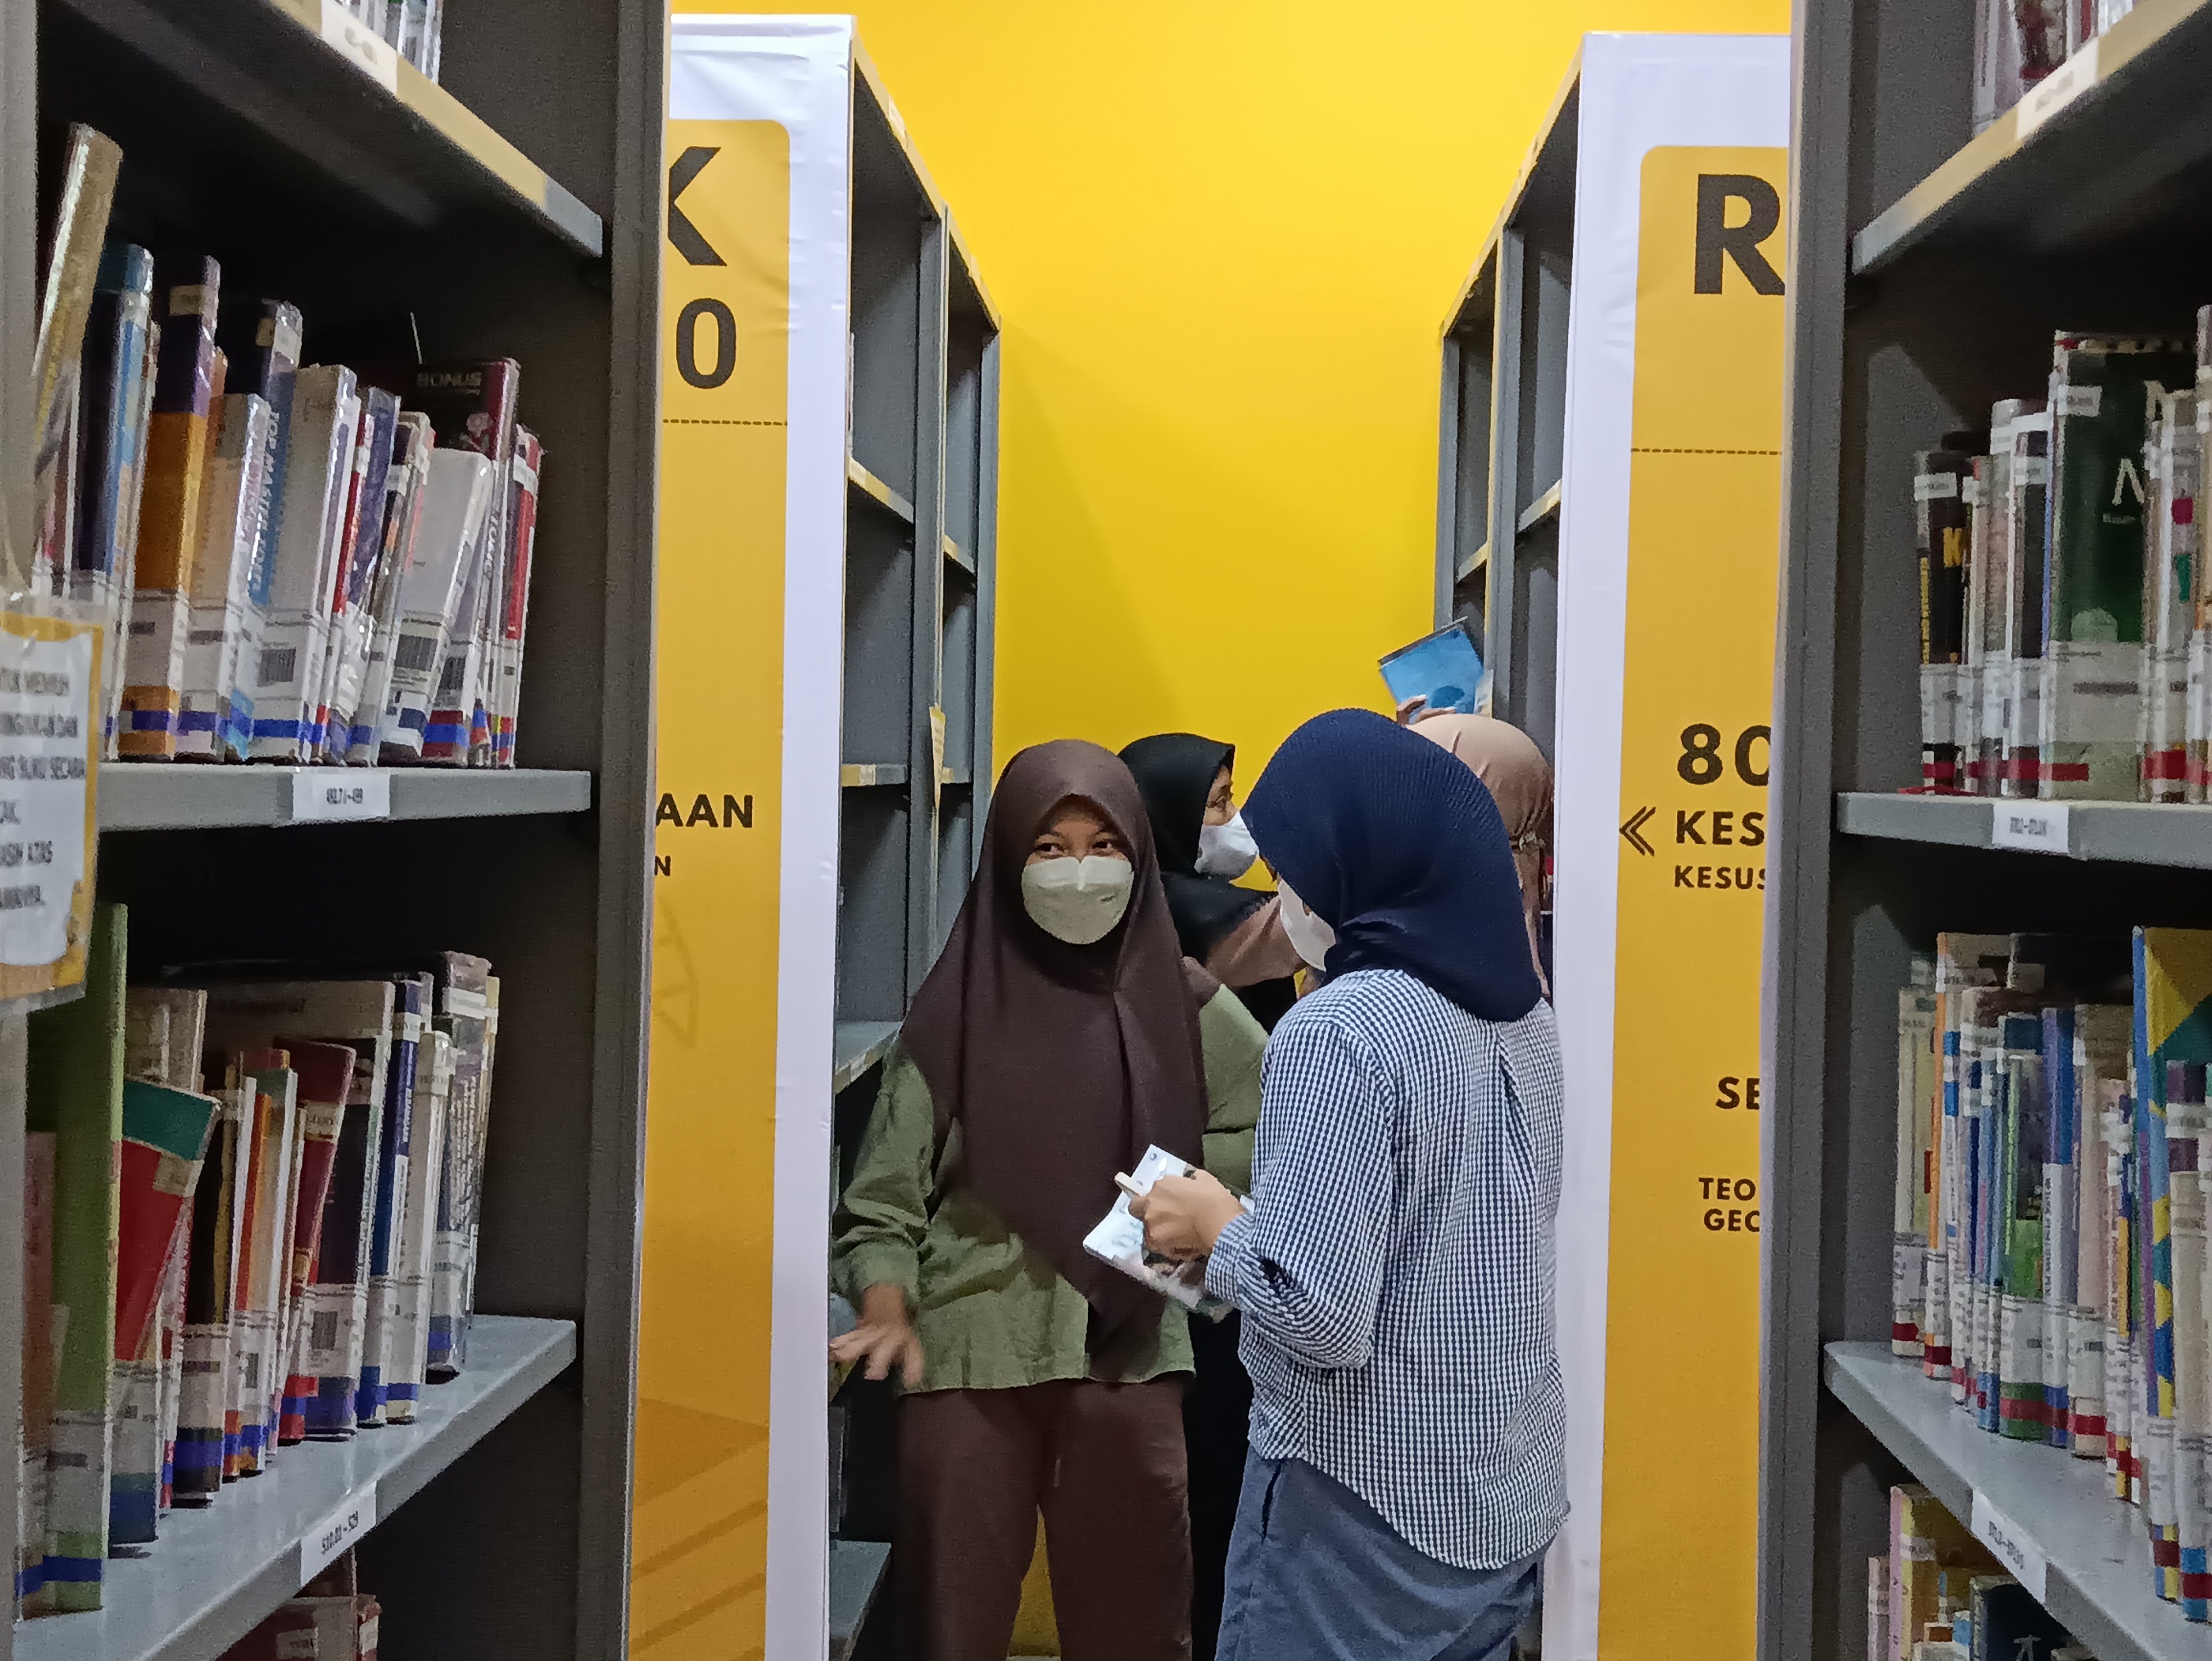 Liburan Sekolah Perpustakaan Kota Yogya Diserbu Pengunjung